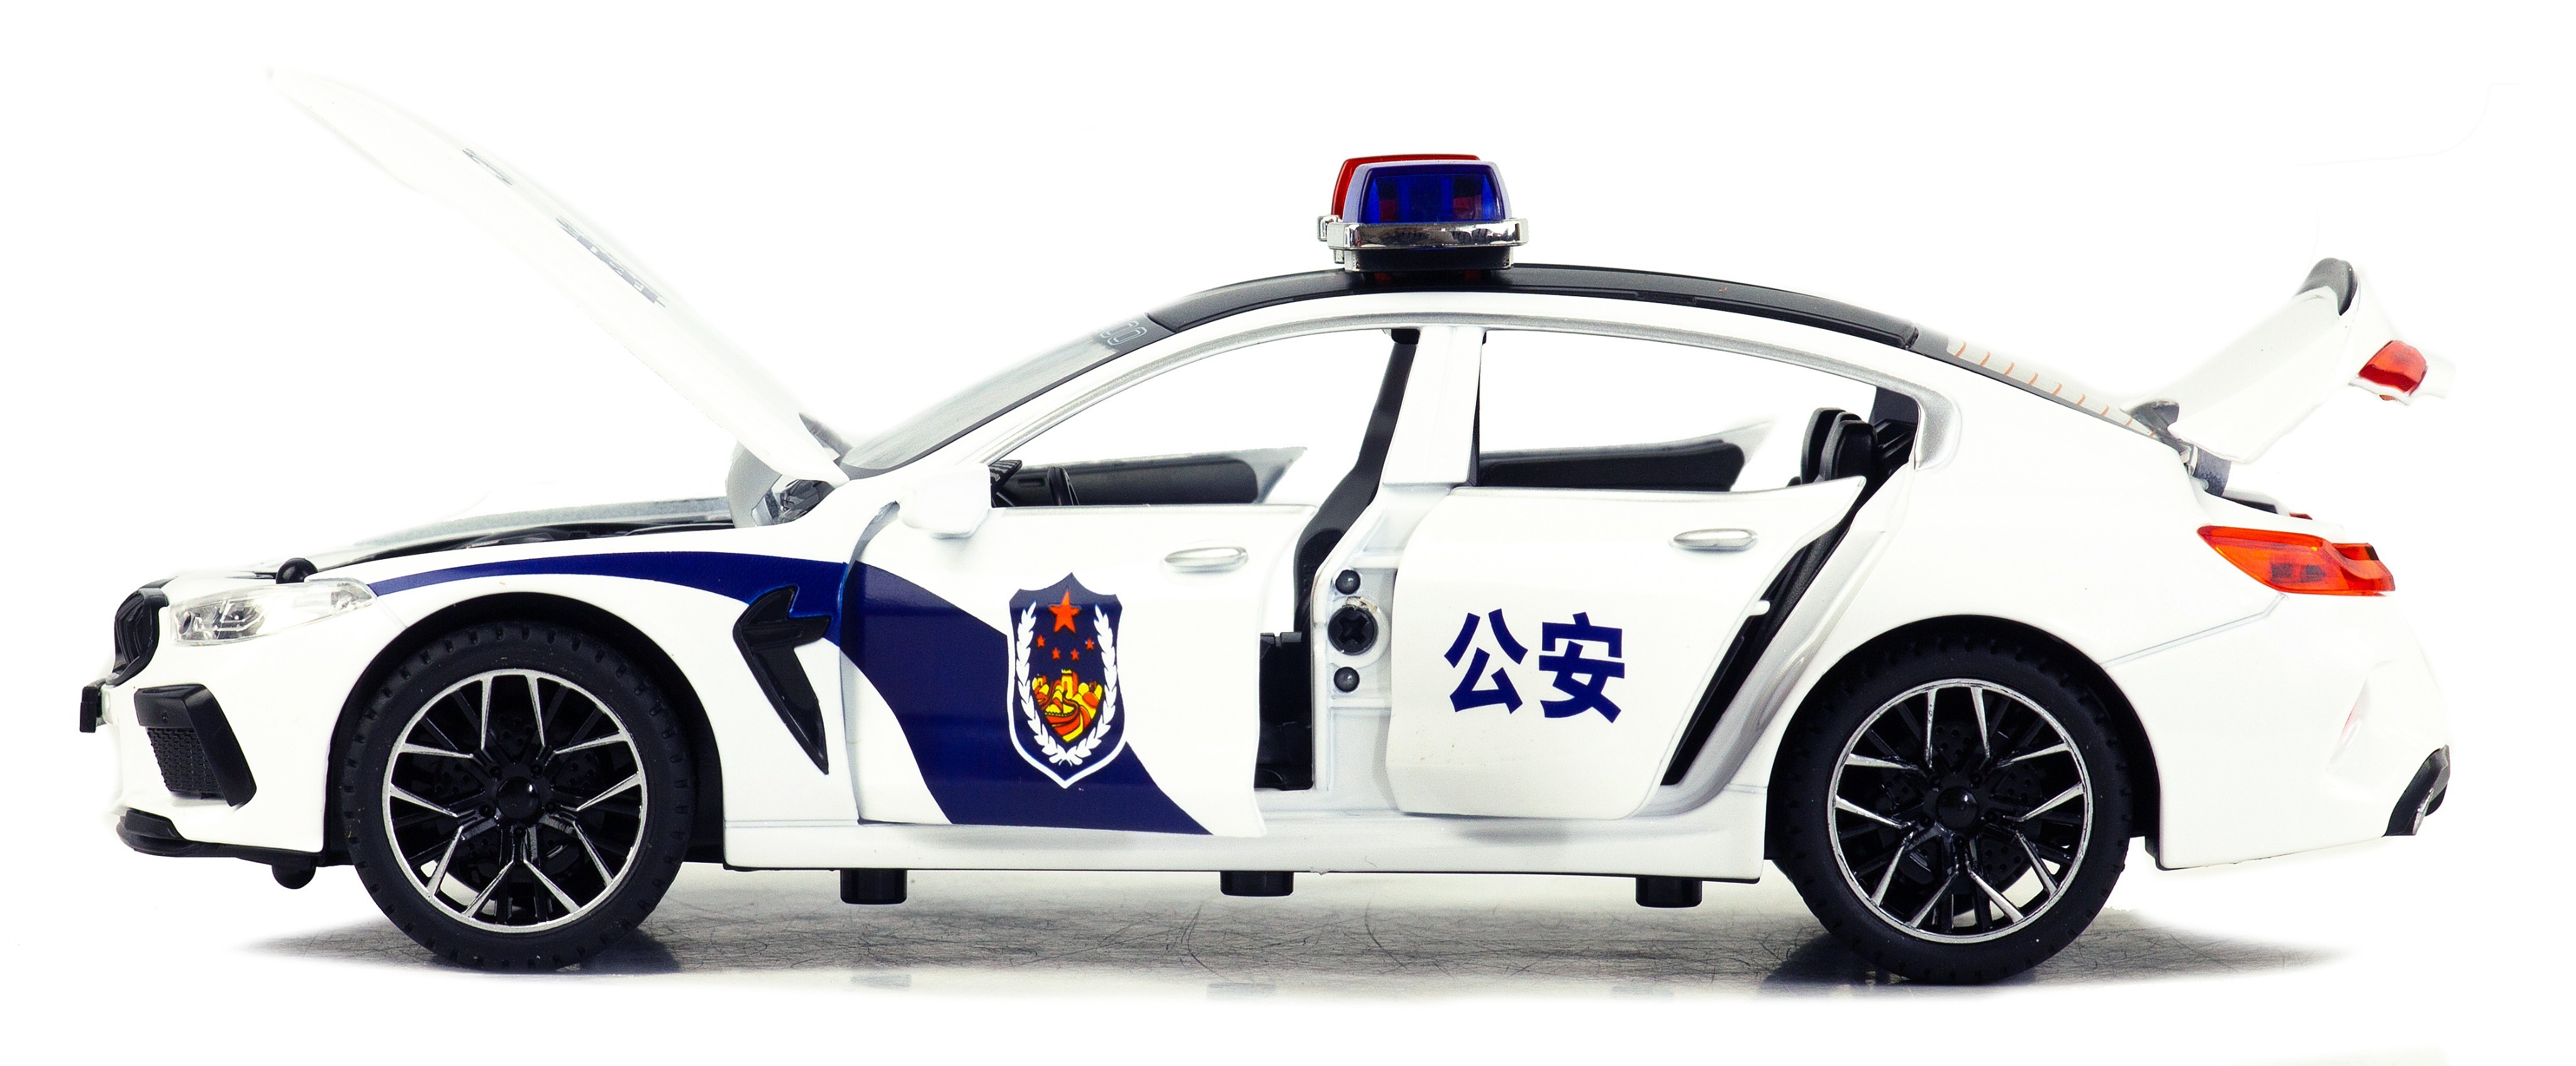 Металлическая машинка Model Car 1:24 «BMW M8 Полиция» А1900-172, 21 см., инерционная, свет, звук / Белый